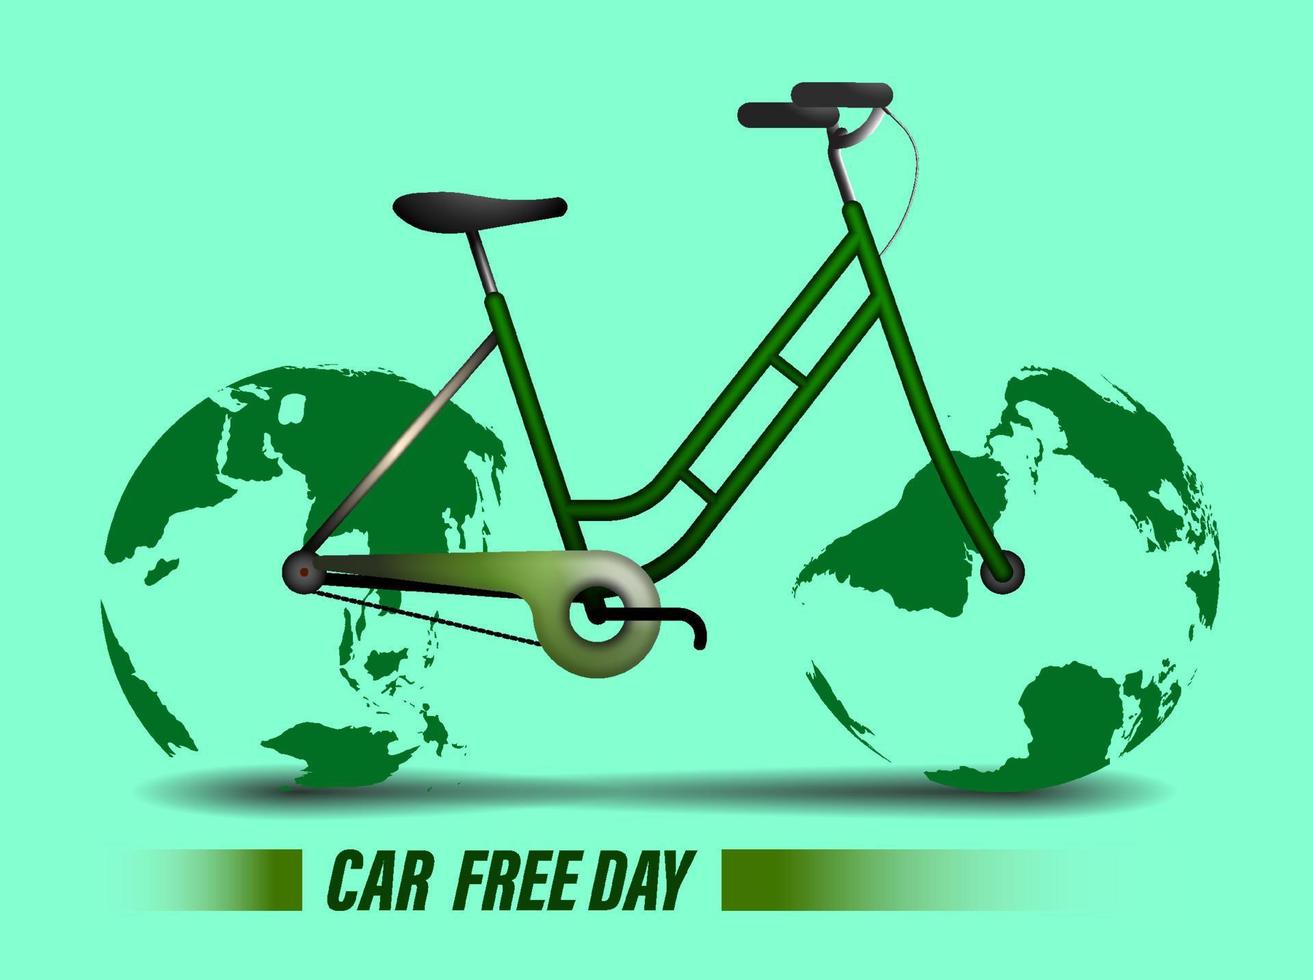 världens bilfria dag banner eller affisch. cykel med hjul i form av planeten jorden. miljöskydd och omsorg. 22 september. realistisk vektor